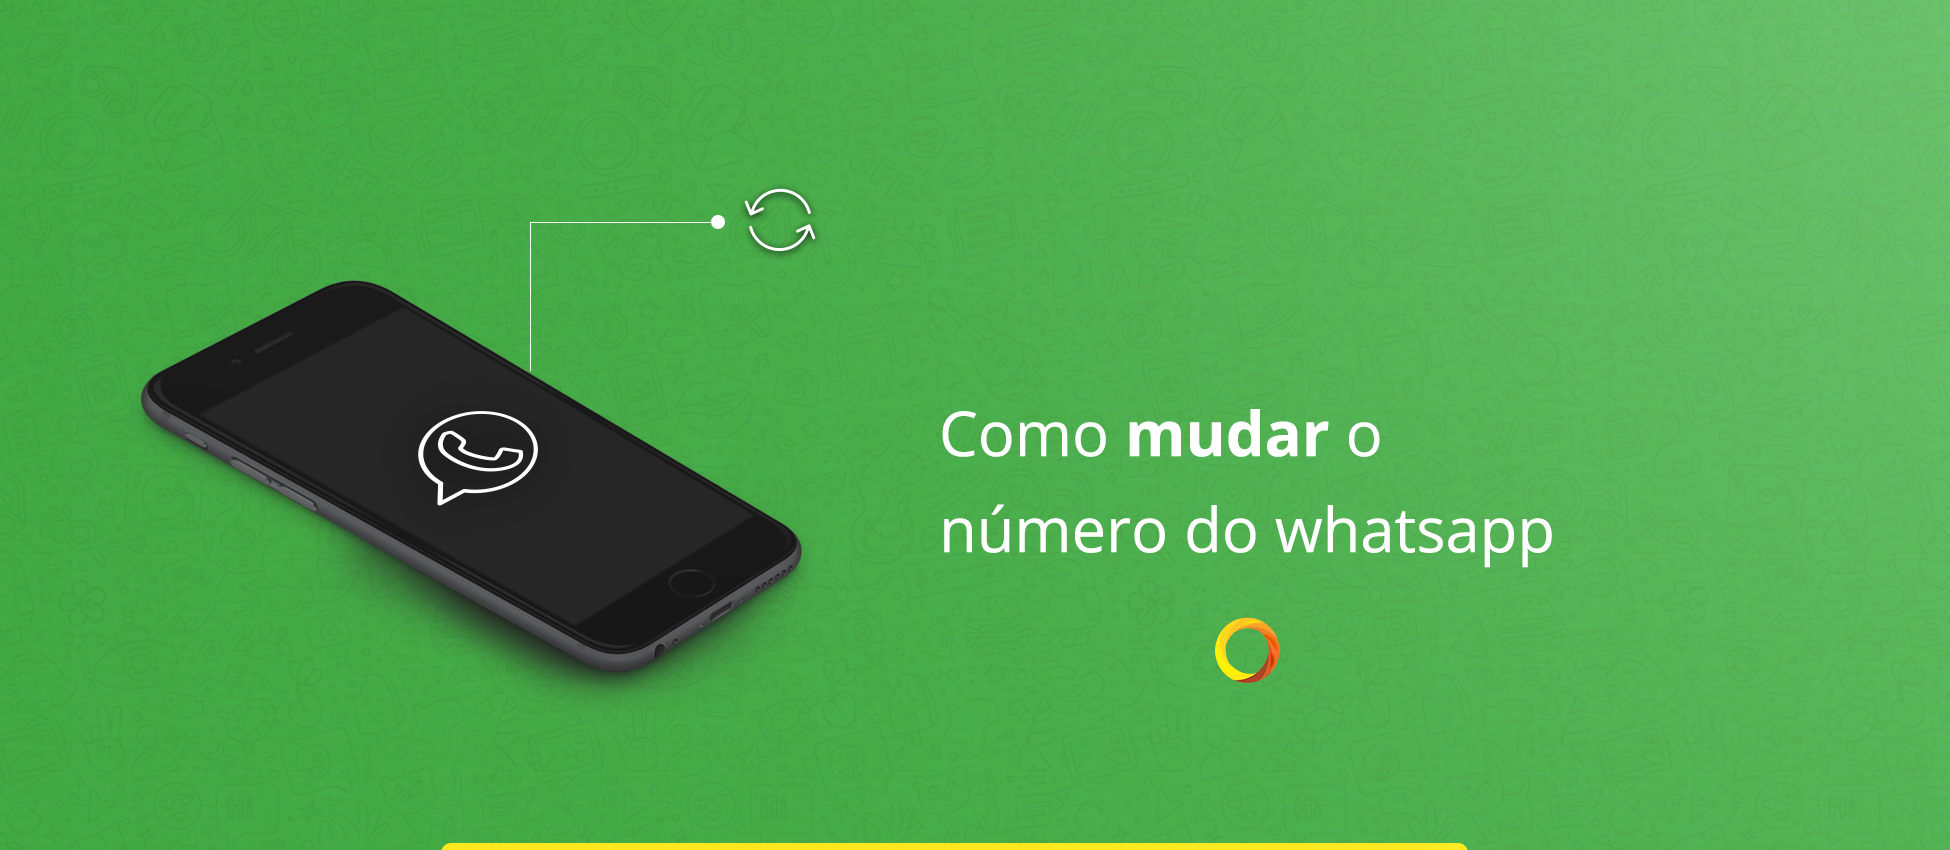 Portabilidade de Números - Como mudar o número do WhatsApp e manter os meus contatos e conversas?